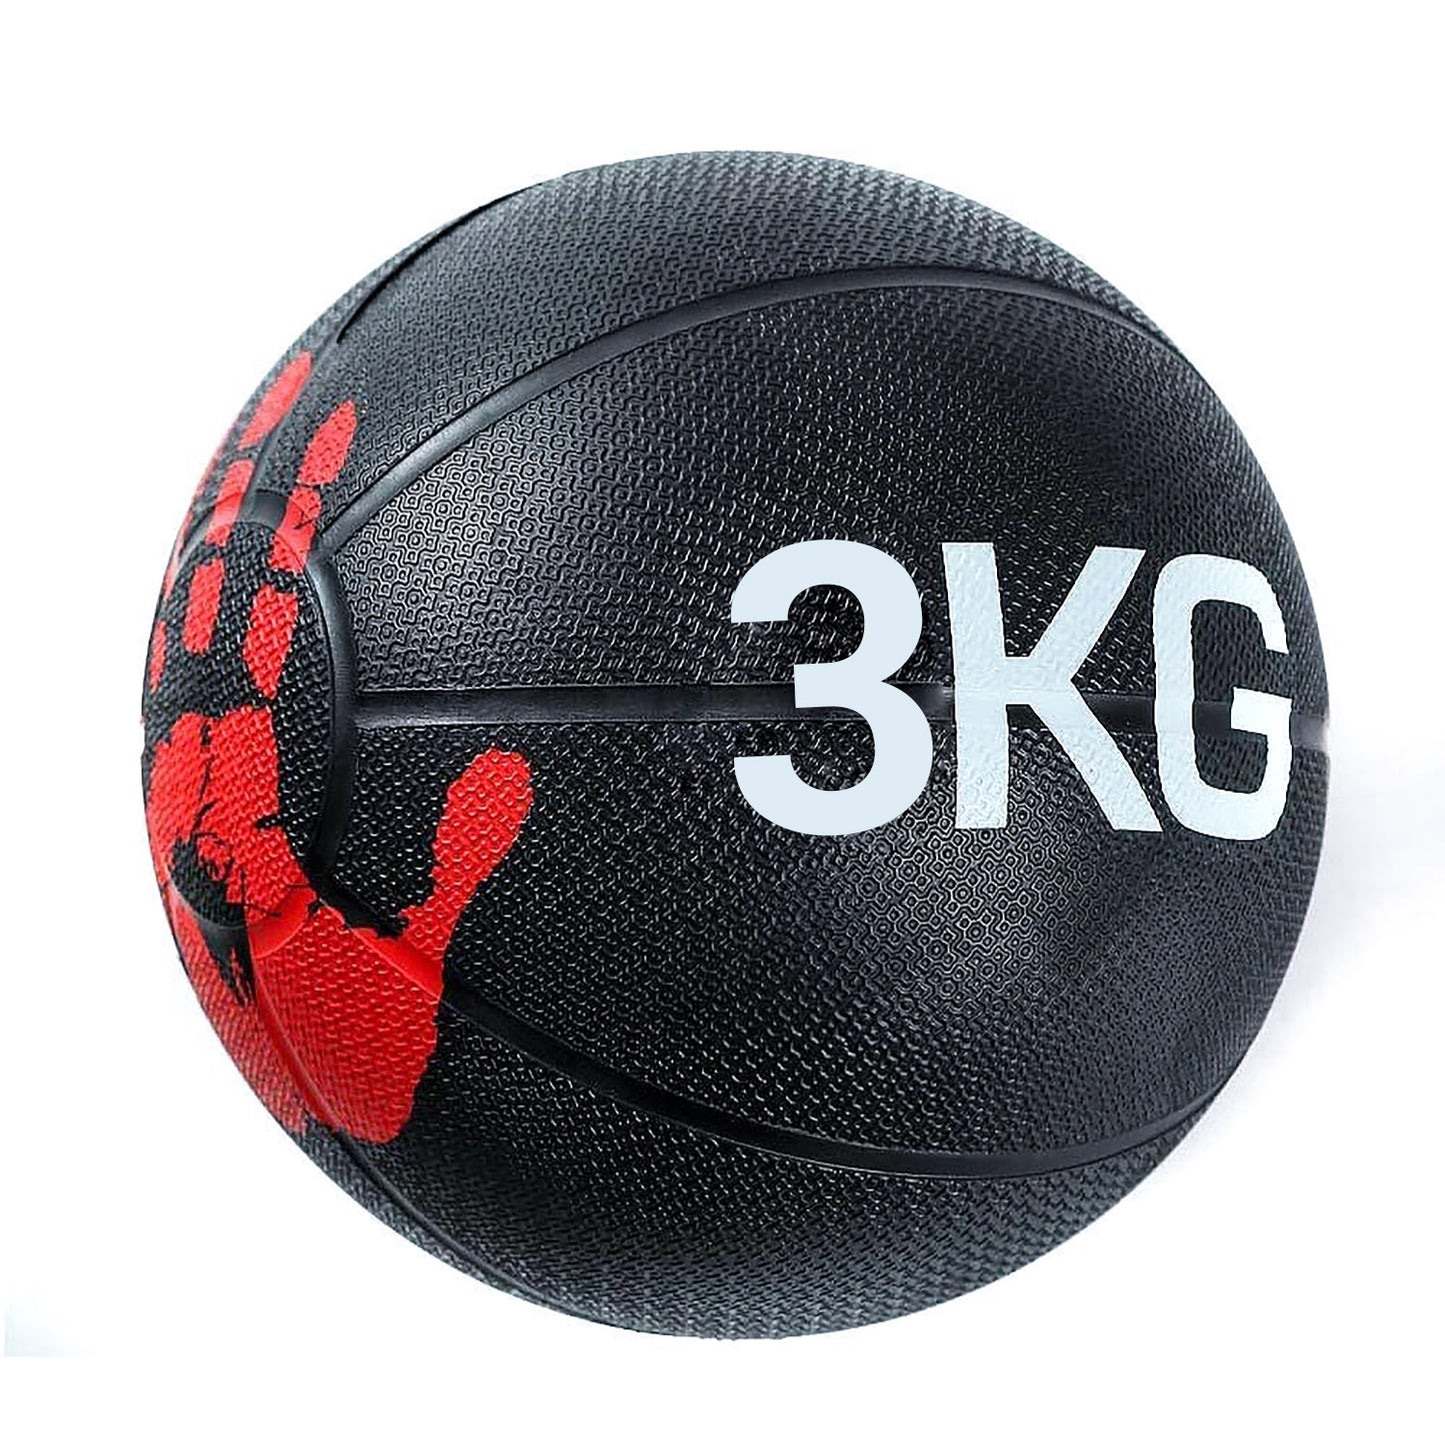 كرة طبية من المطاط لاعادة التأهيل و اللياقة البدنية - بشكل كف يد - لون اسود و احمر - وزن 3 كيلو جرام